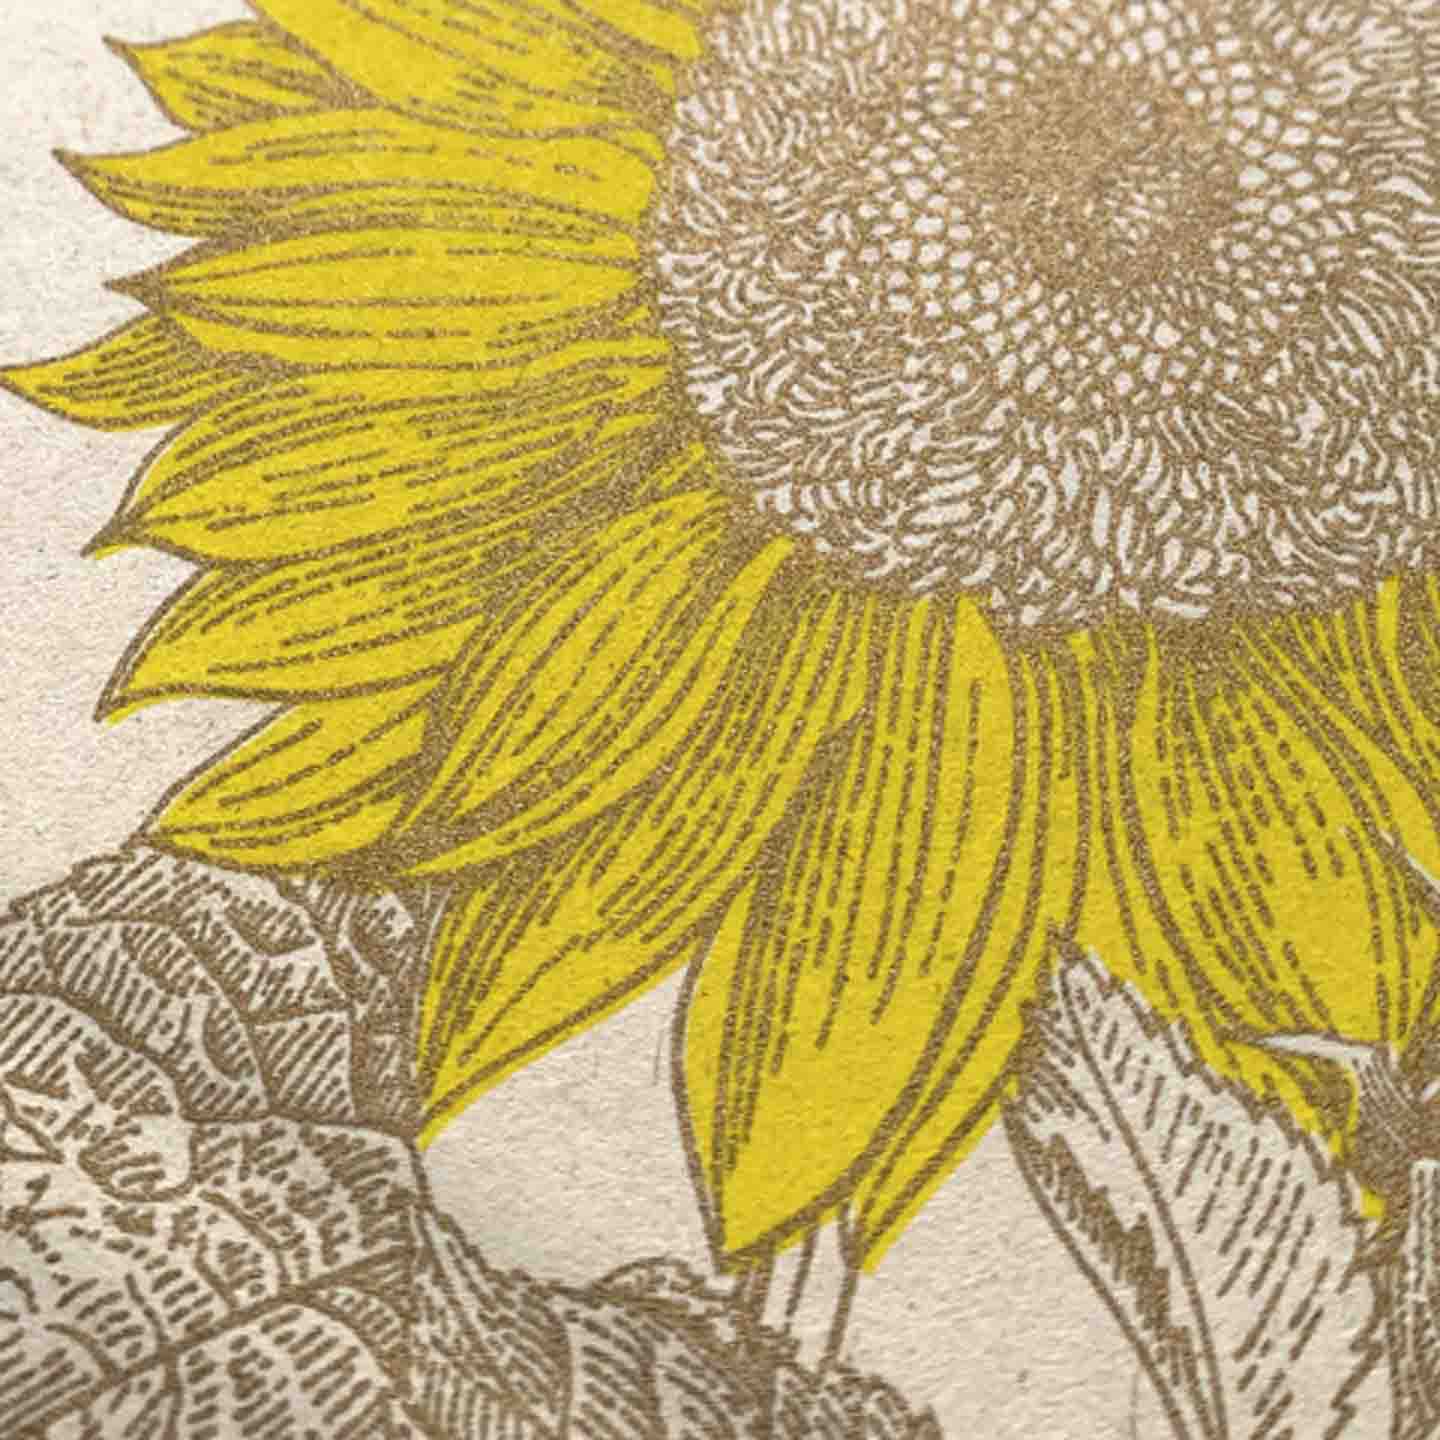 Detailansicht Sonnenblume in Gelb und Gold mit erkennbarer PapierkörnungTogethery Karte Postkarte Risographie Riso Druck Sonnenblume Blume